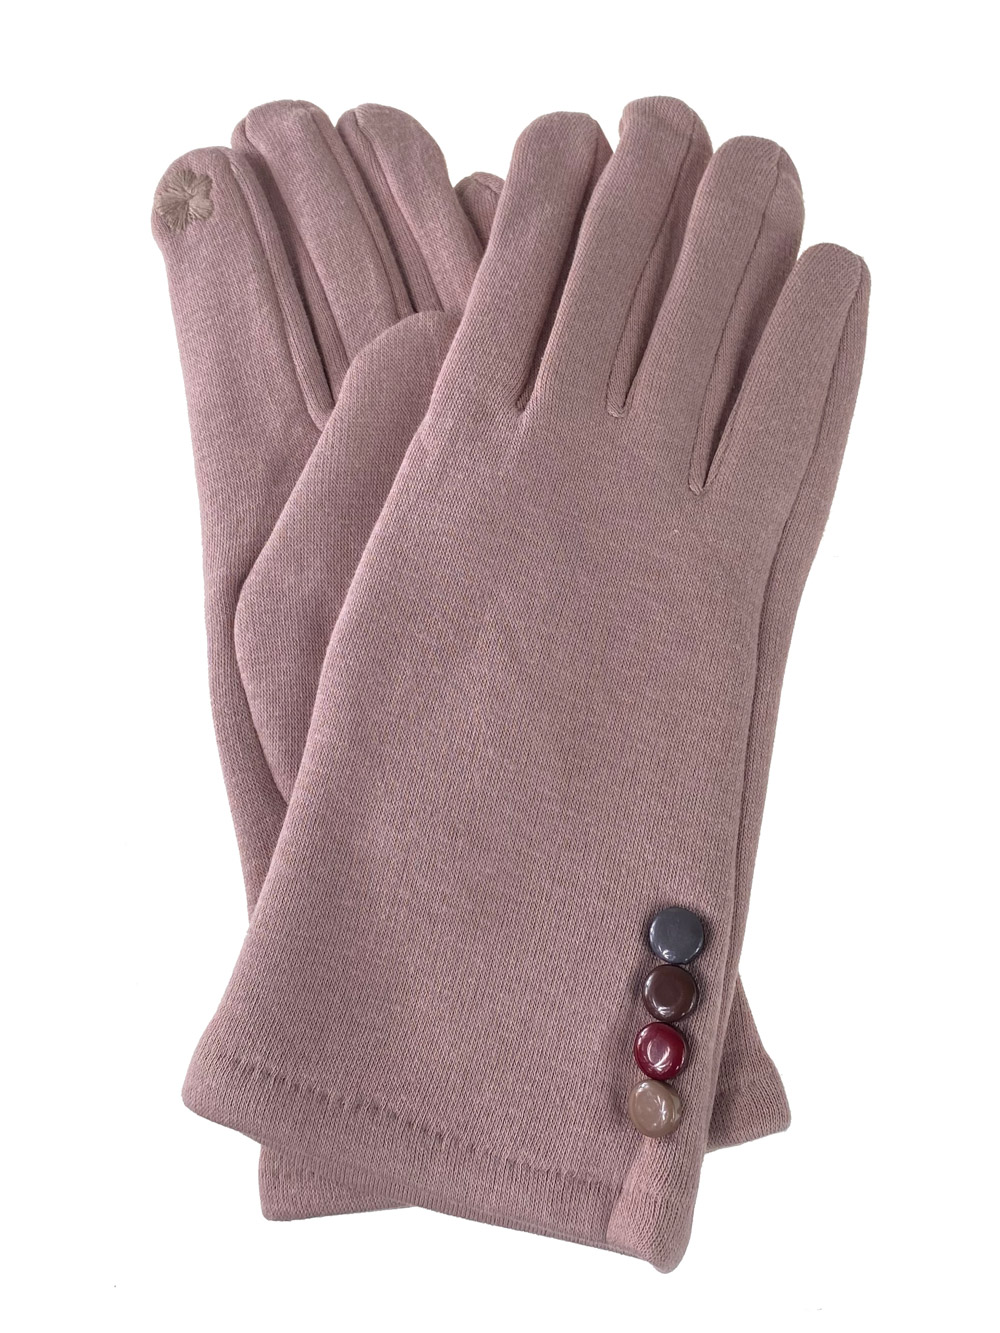 Женские утеплённые перчатки из велюра с декором, цвет пудровый